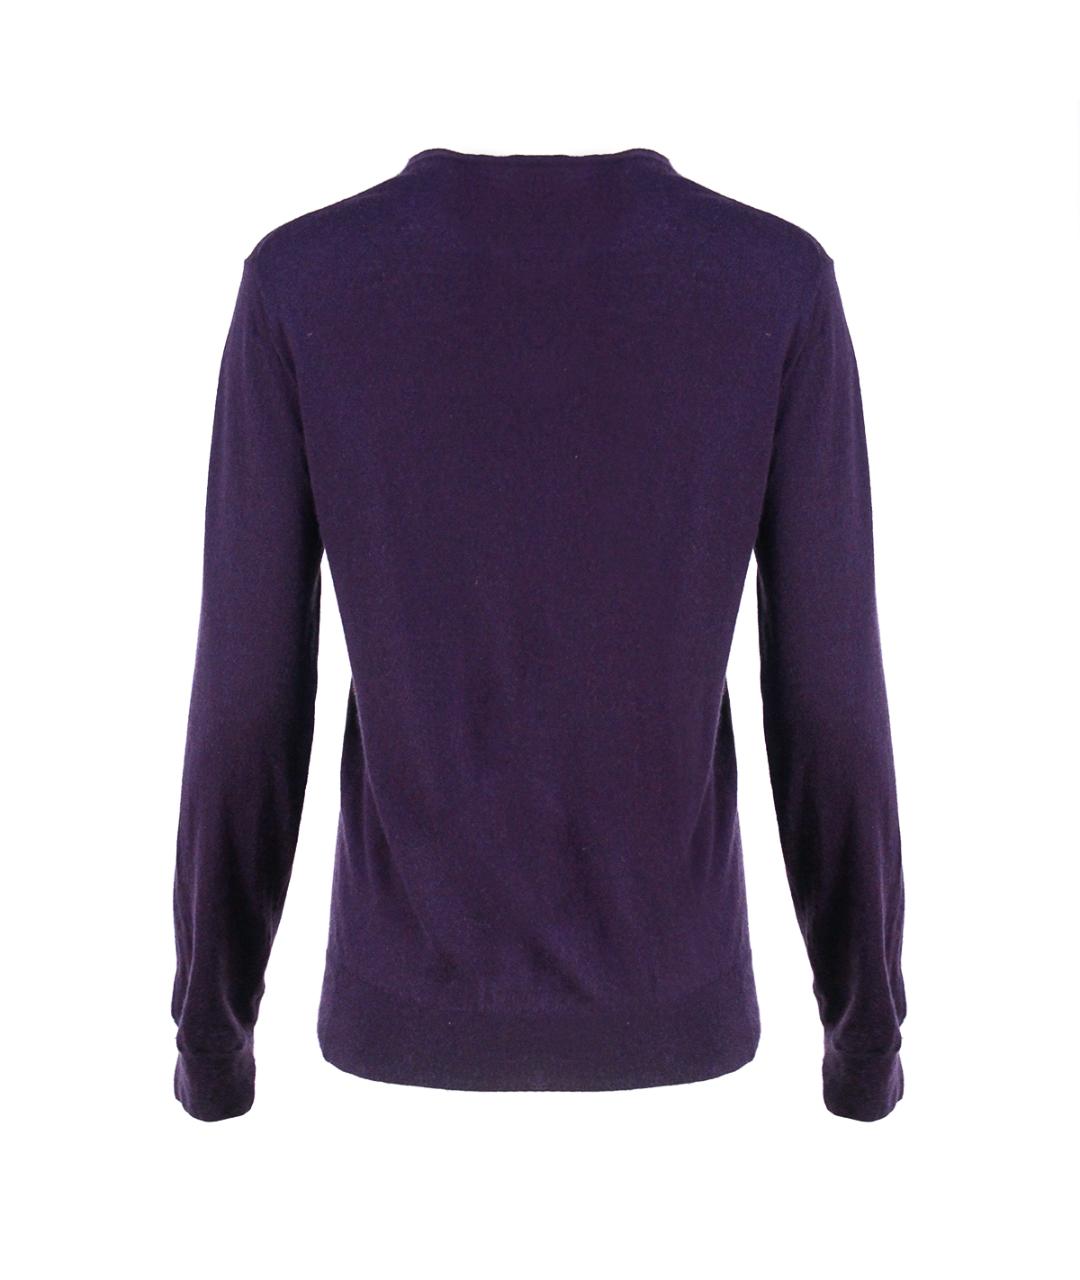 RE VERA Фиолетовый кашемировый джемпер / свитер, фото 2